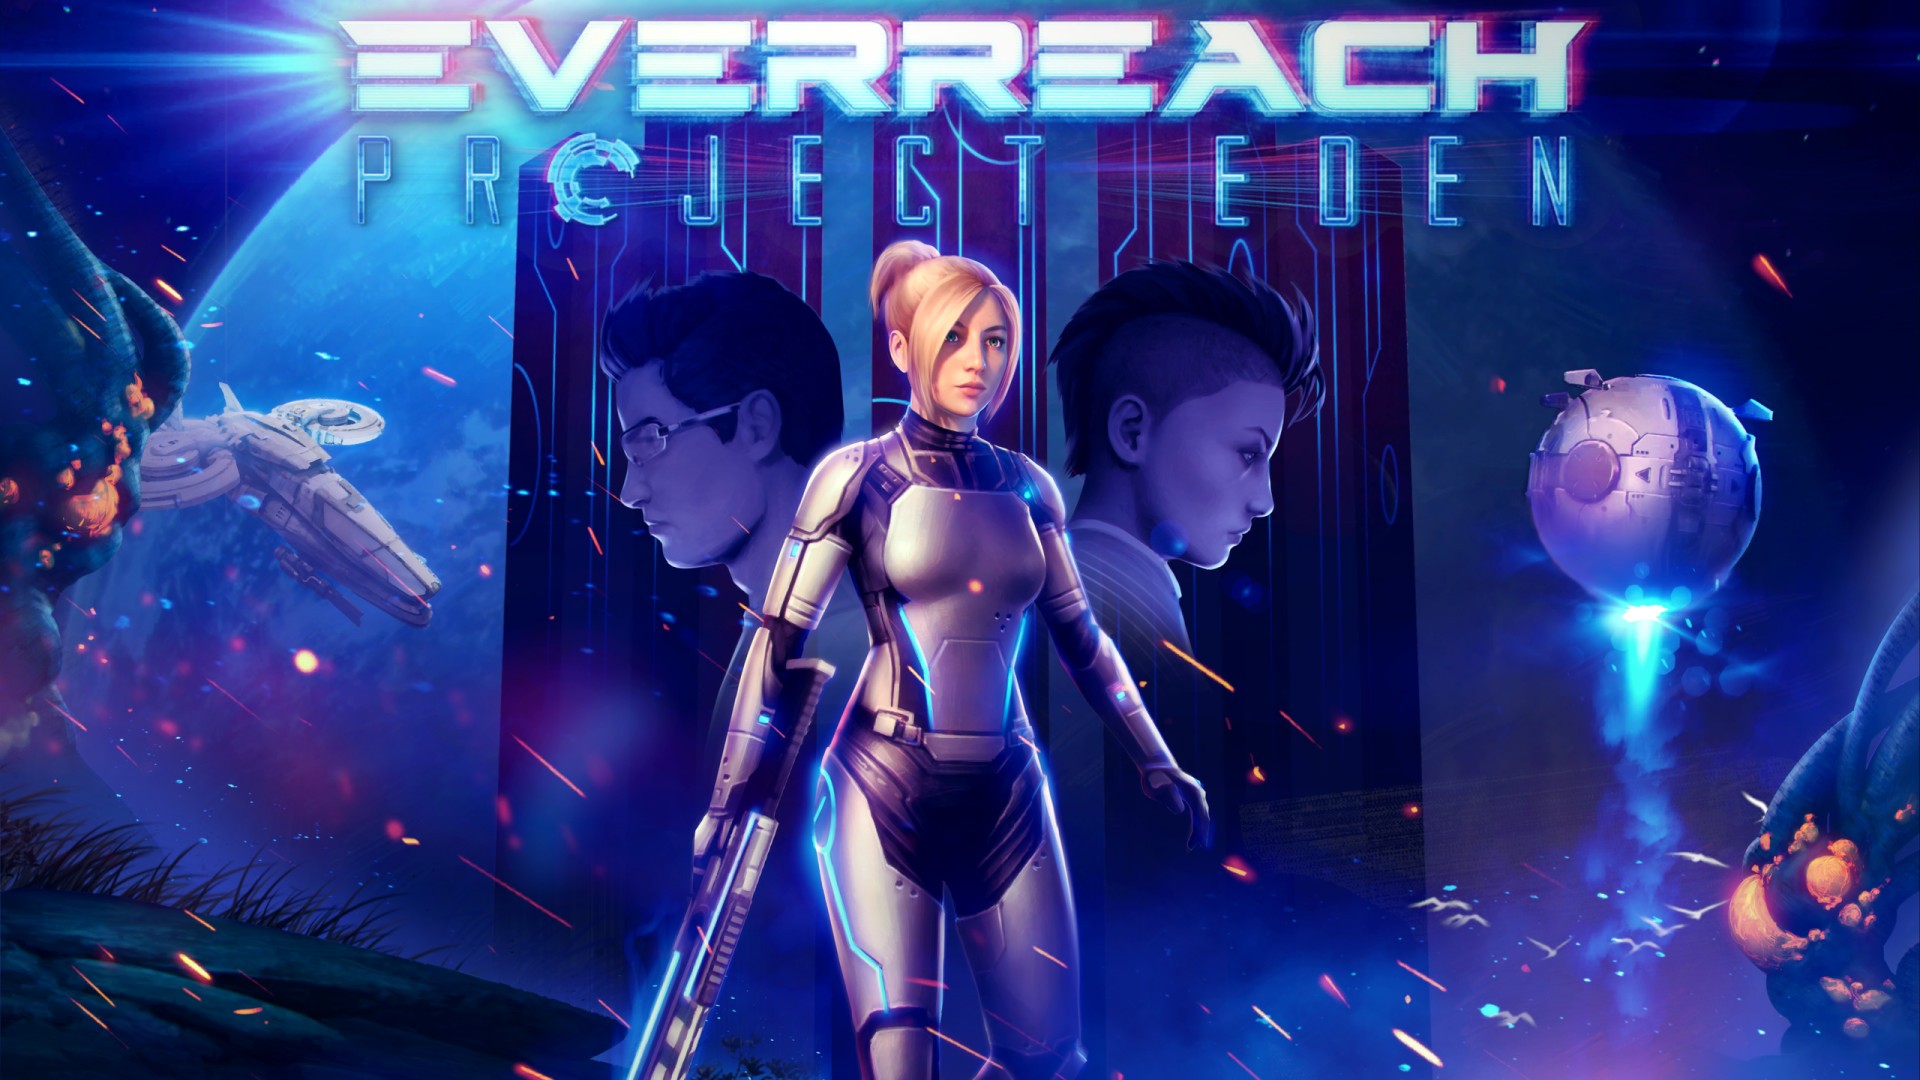 Everreach Project Eden: svelato il nuovo action sci-fi dell'autrice di Mass Effect